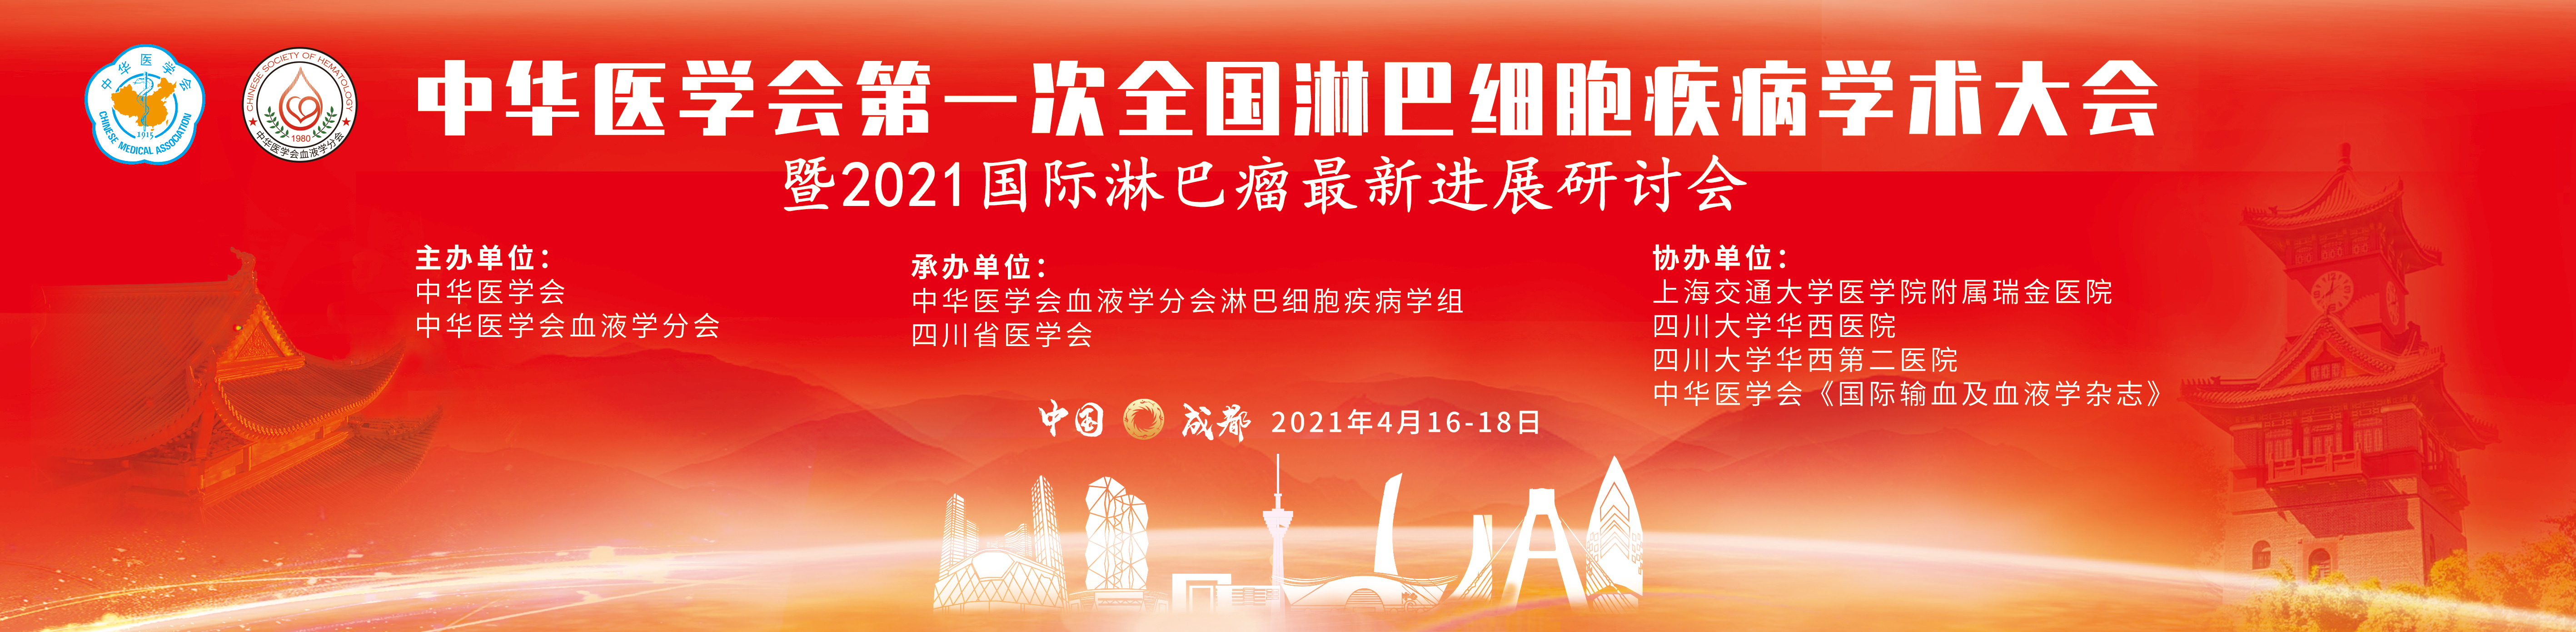 中华医学会第一次全国淋巴细胞疾病学术大会